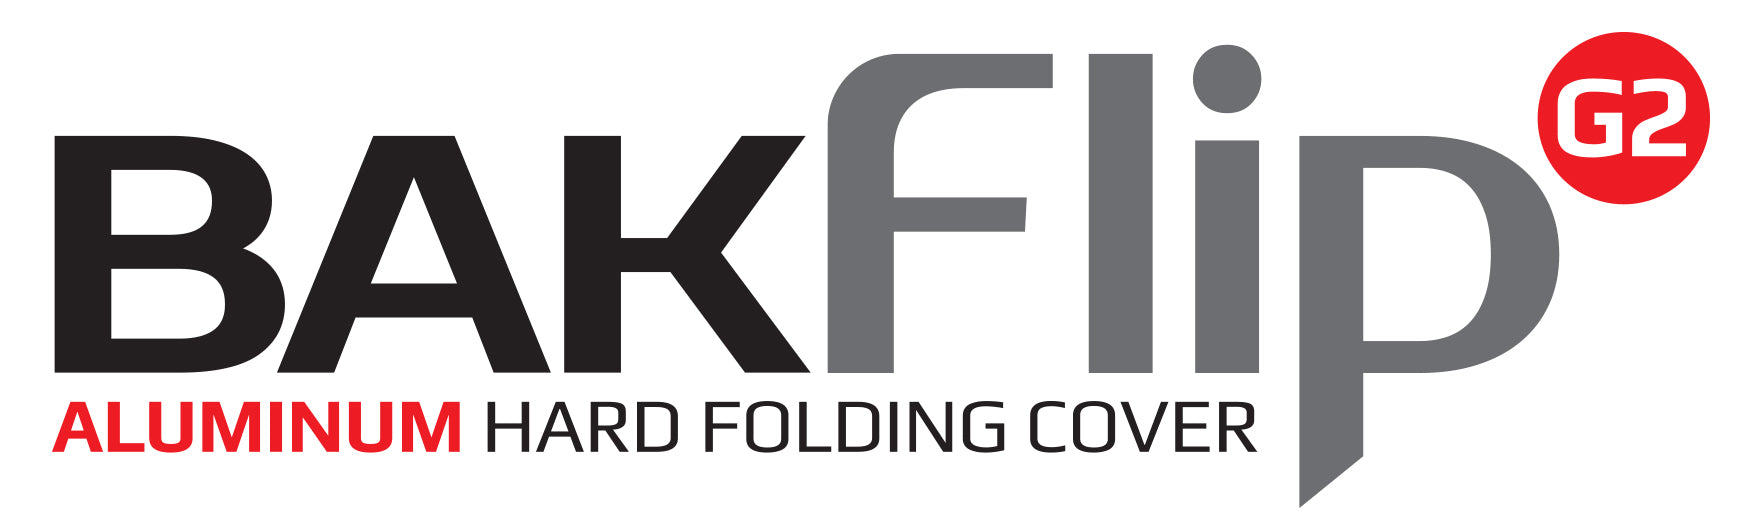 BAK BAKFlip G2 Hard Folding Truck Bed Cover - 1999-2007 Ford F-250/350/450 8' Bed Model 226304